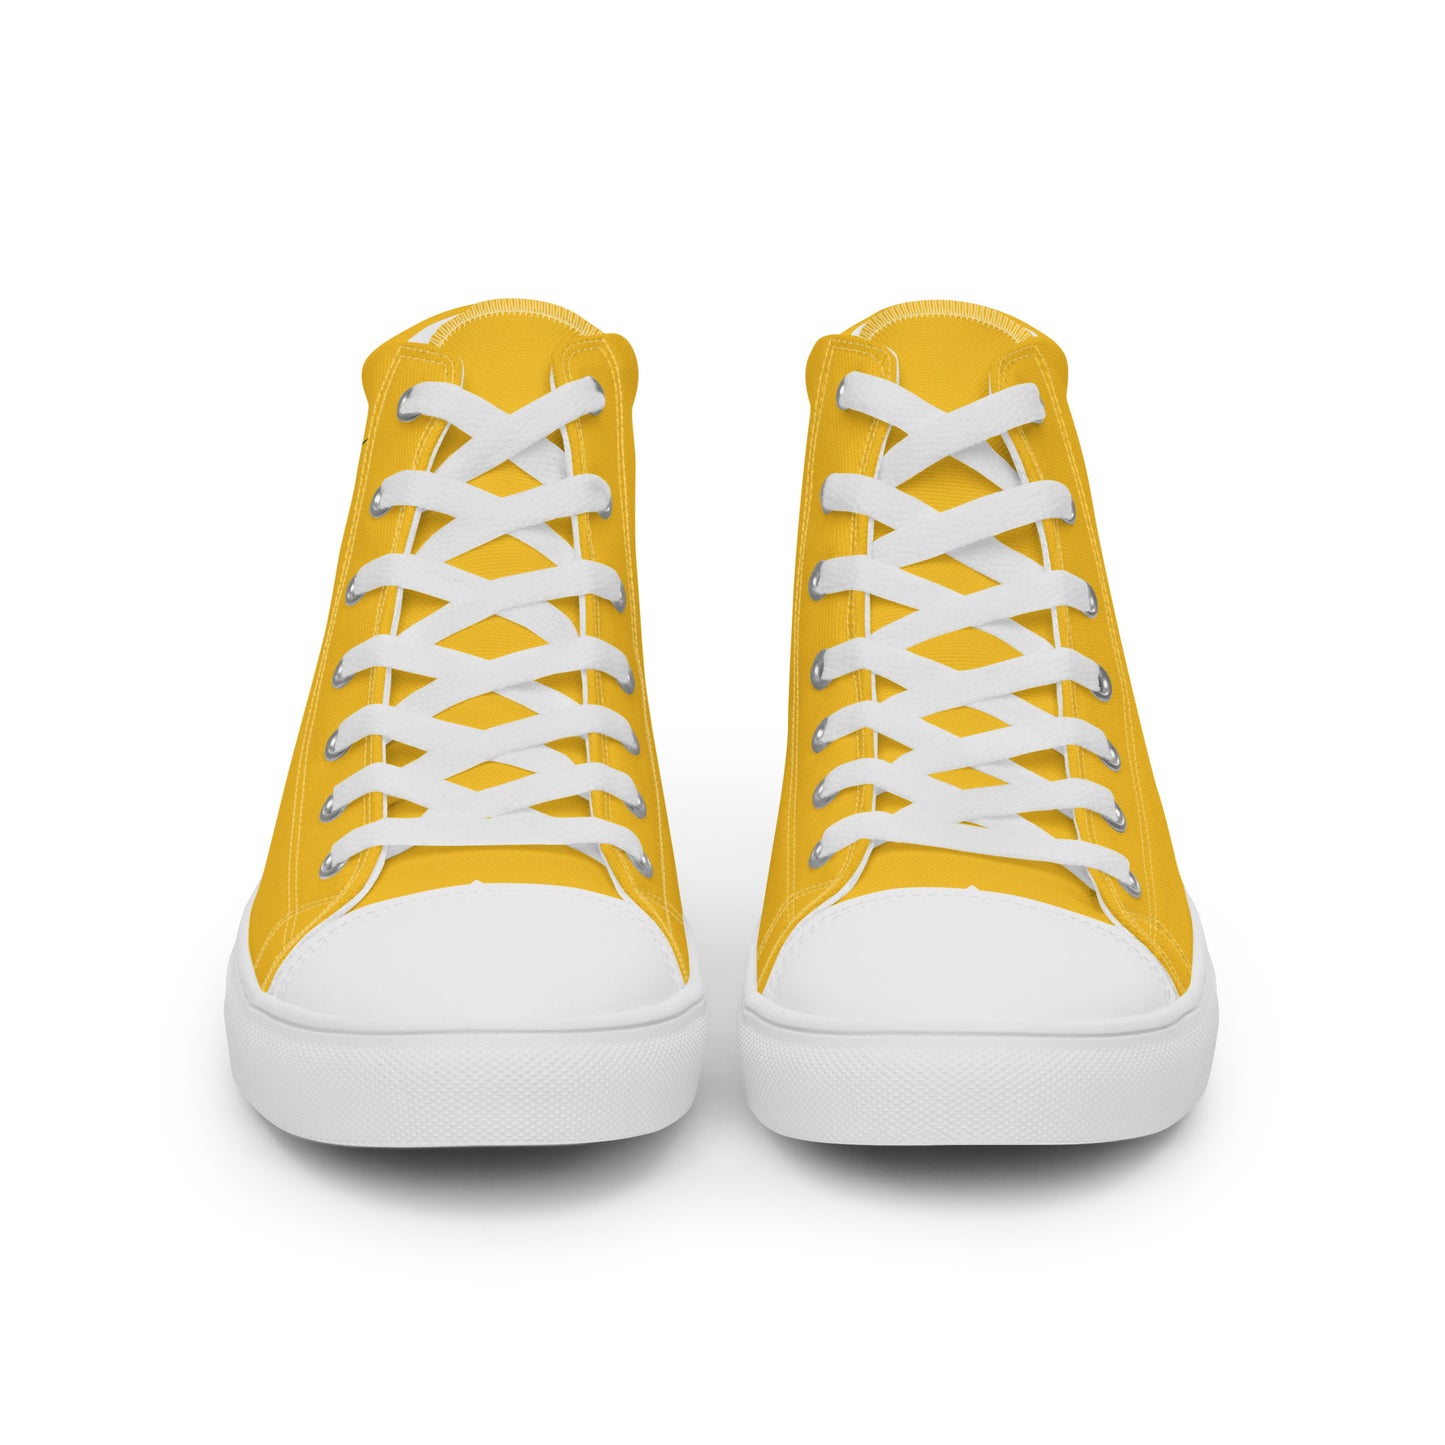 Venezuela - Women - Yellow - High top shoes